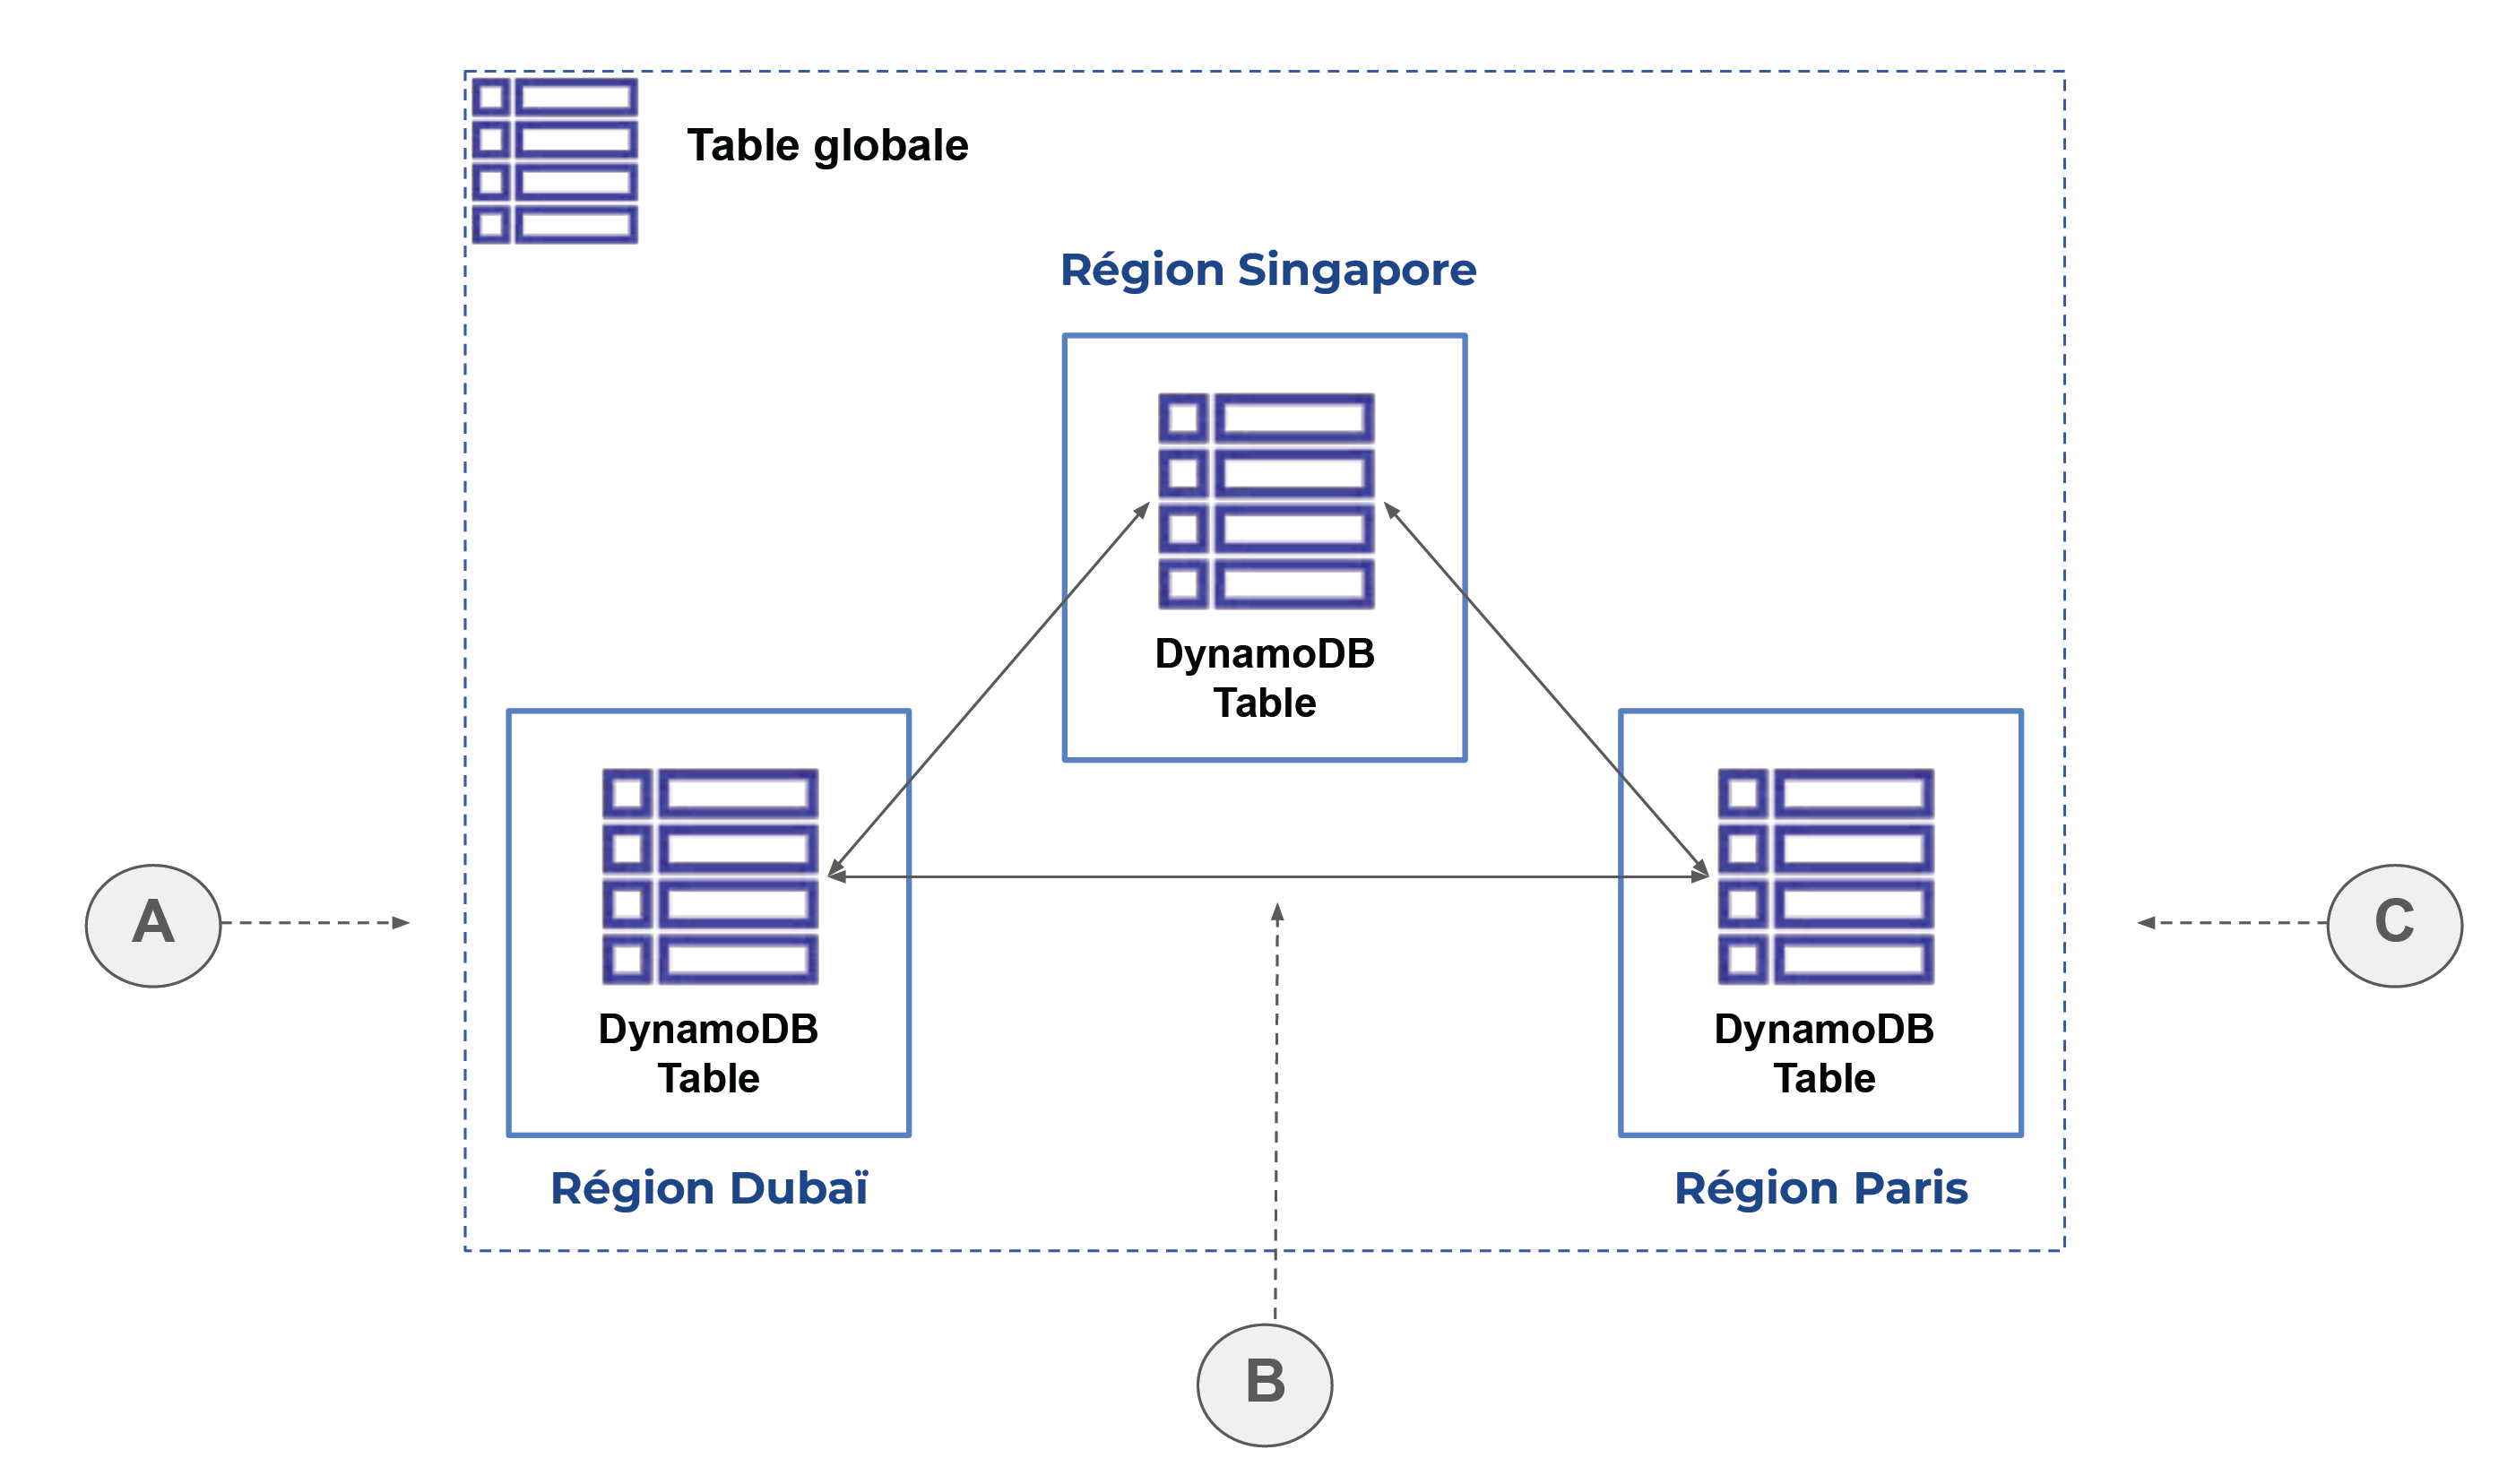 Le schéma de la table globale comporte 3 régions : Dubaï, Singapore et Paris, tous reliés entre eux par des flèches.